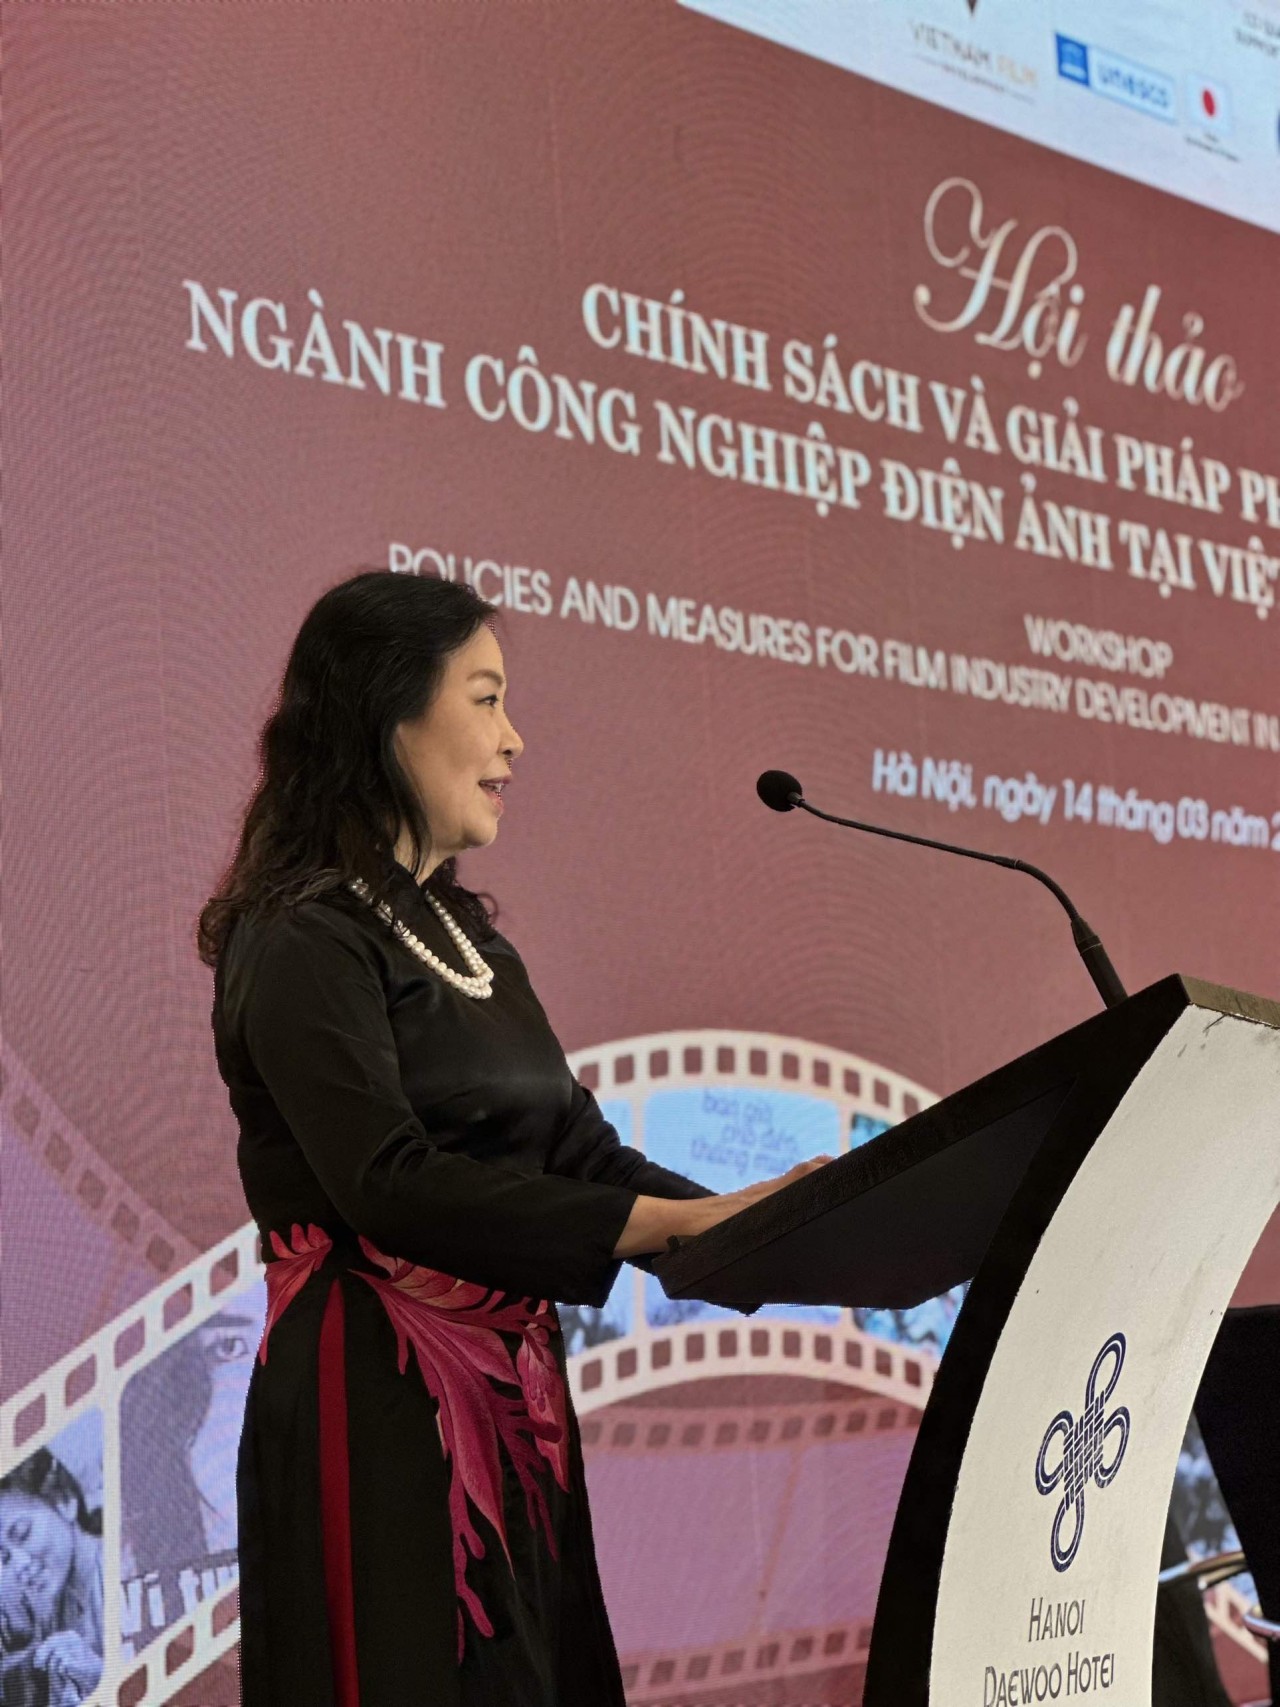 Diễn ra Hội thảo Điện ảnh quốc tế ‘Chính sách và giải pháp phát triển công nghiệp Điện ảnh tại Việt Nam và Đông Nam Á’